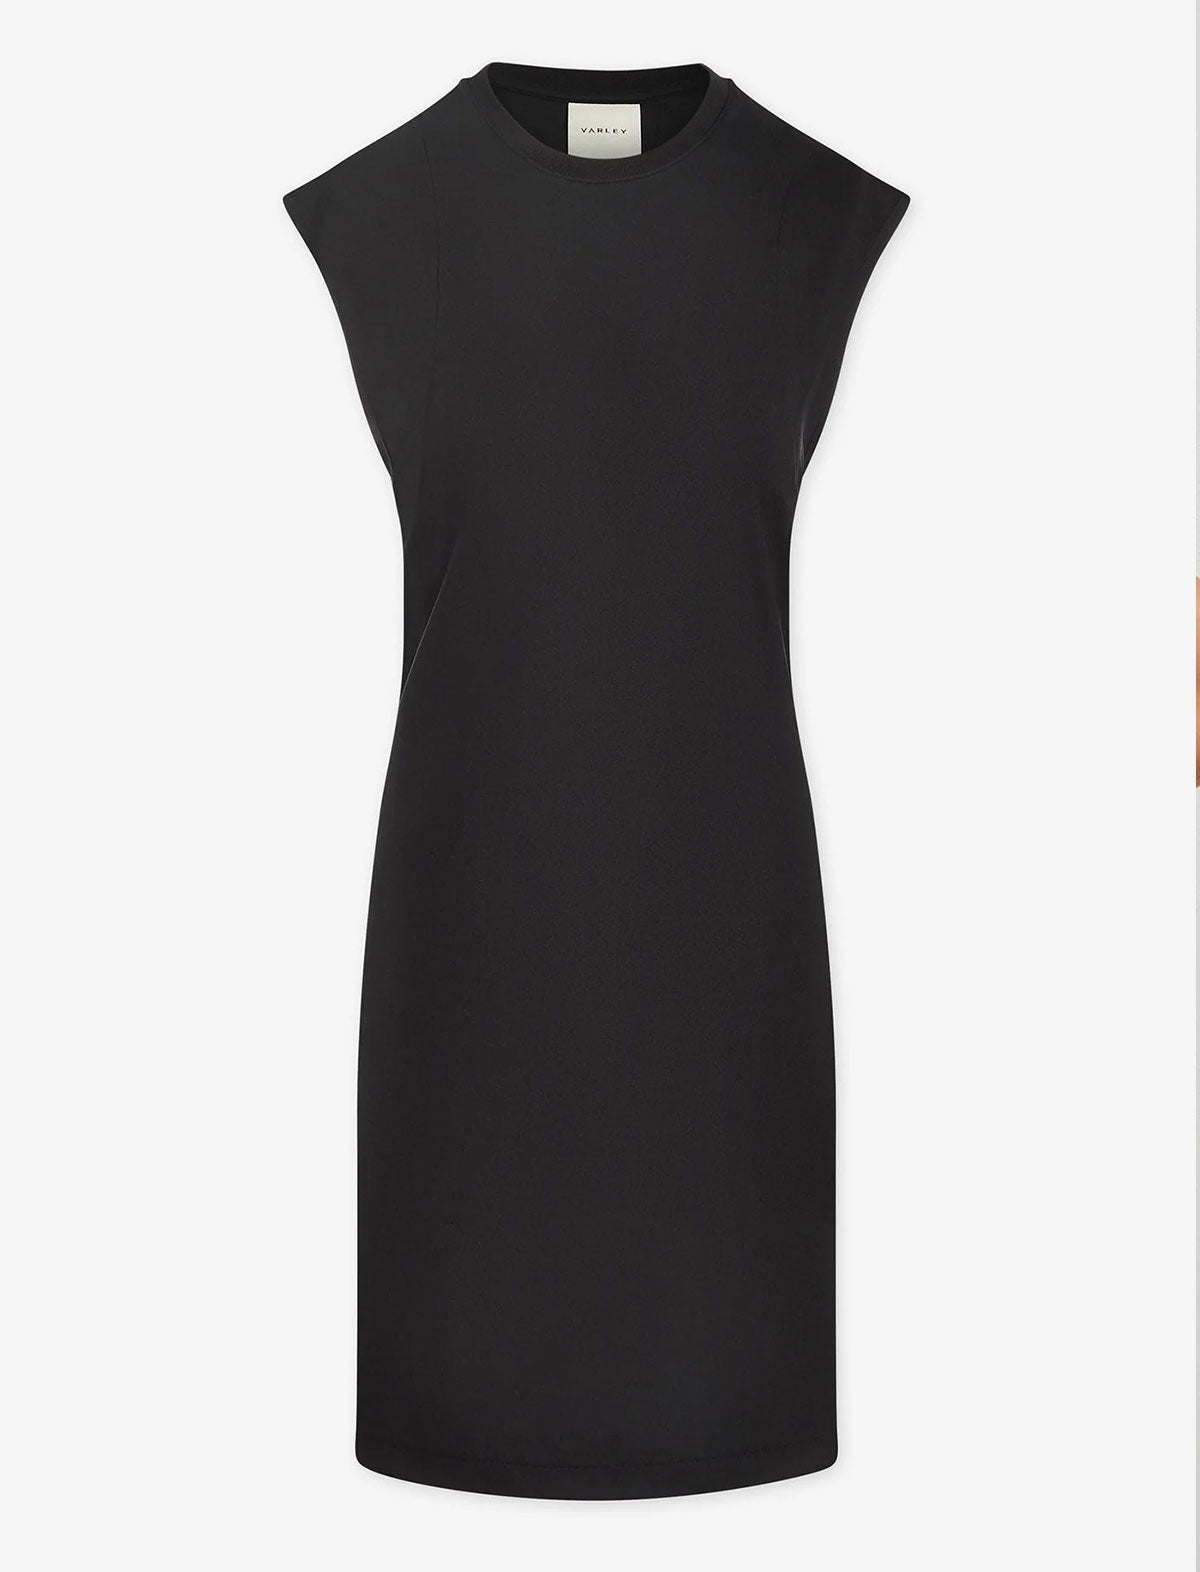 VARLEY Naples Cotton-Blend Dress In Black